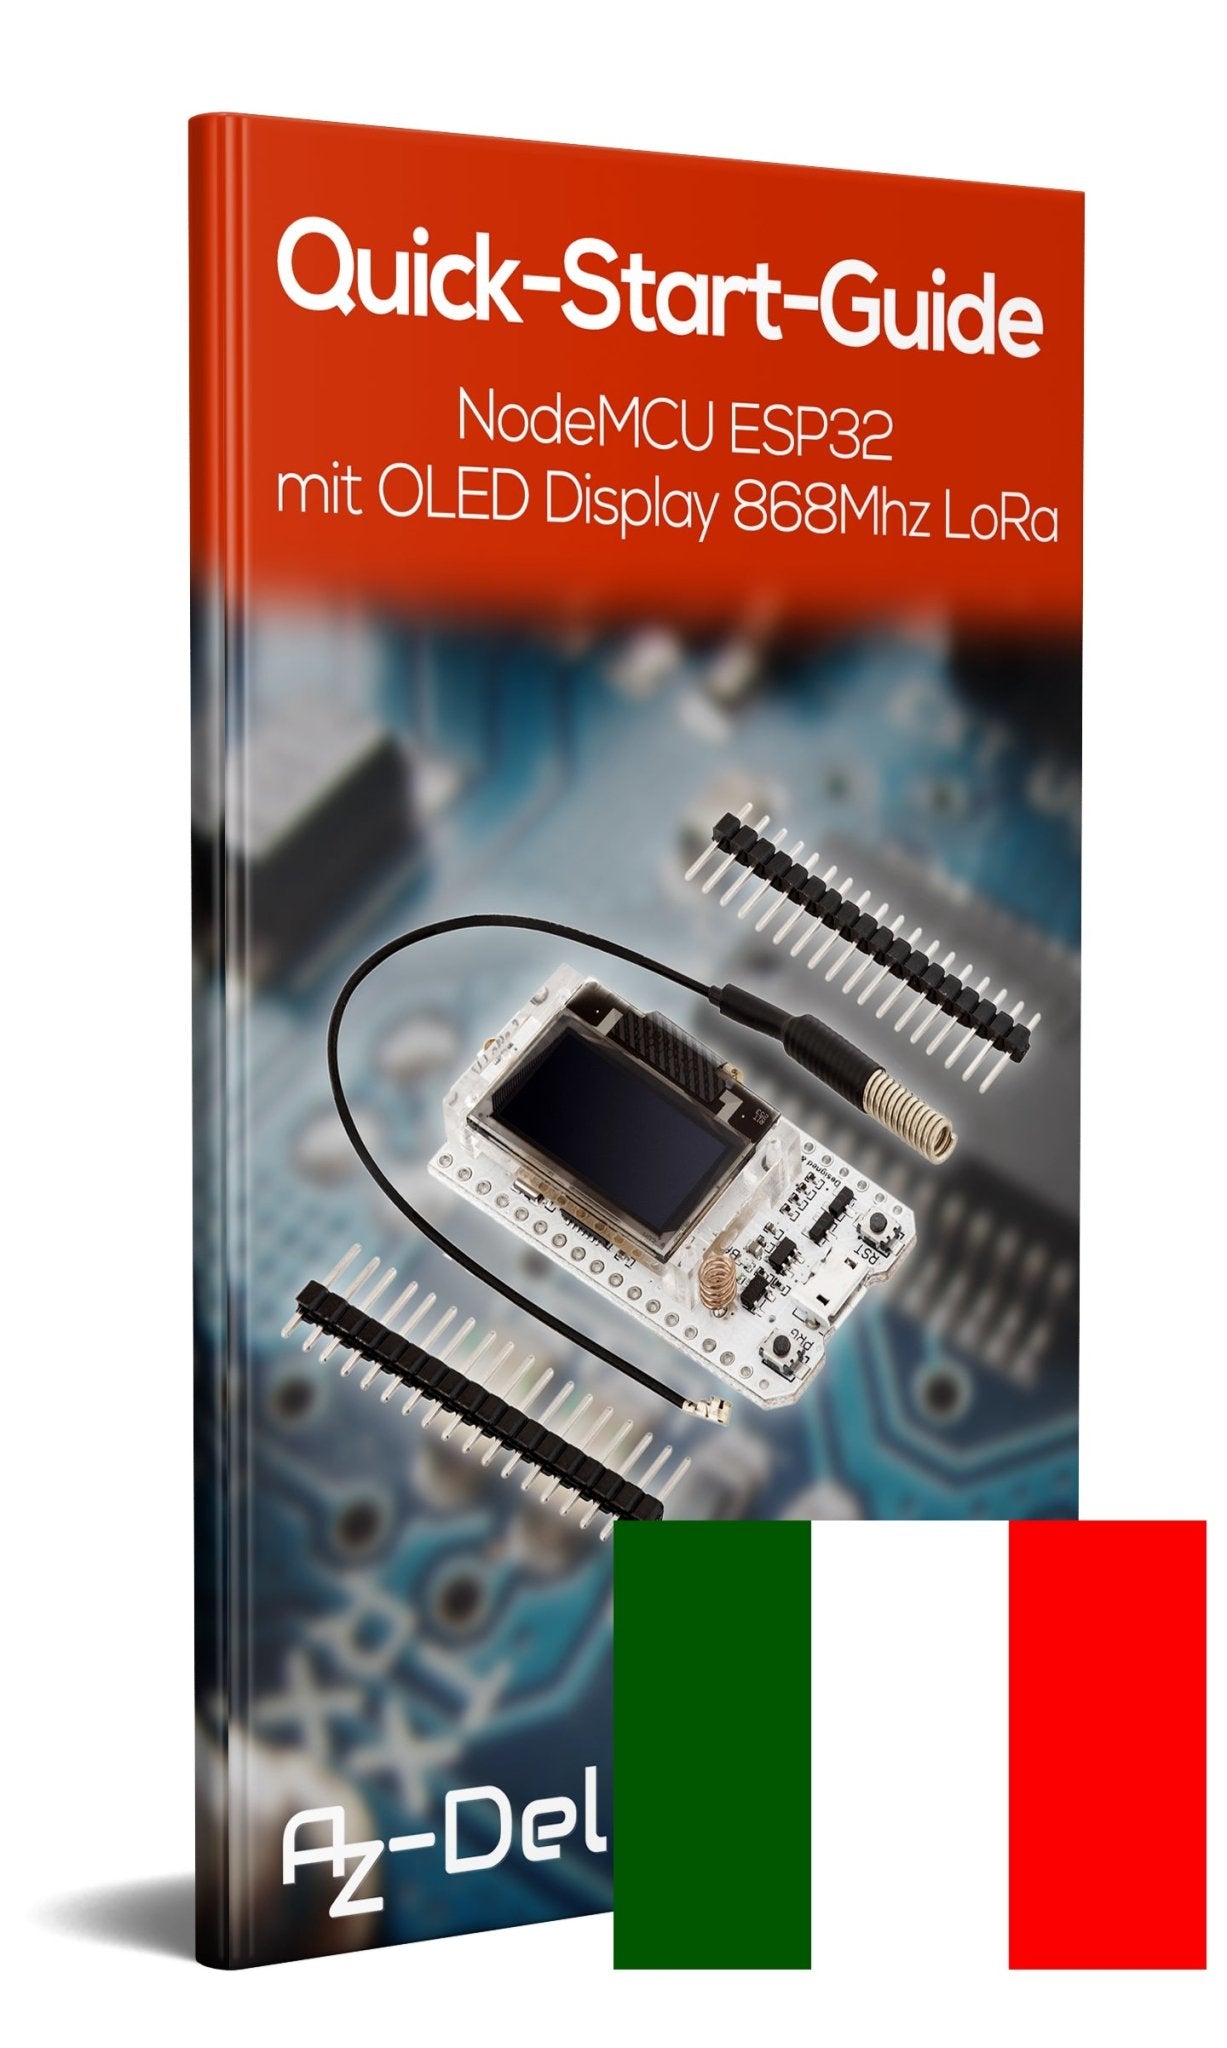 NodeMCU ESP32 mit OLED Display 868Mhz LoRa - AZ-Delivery